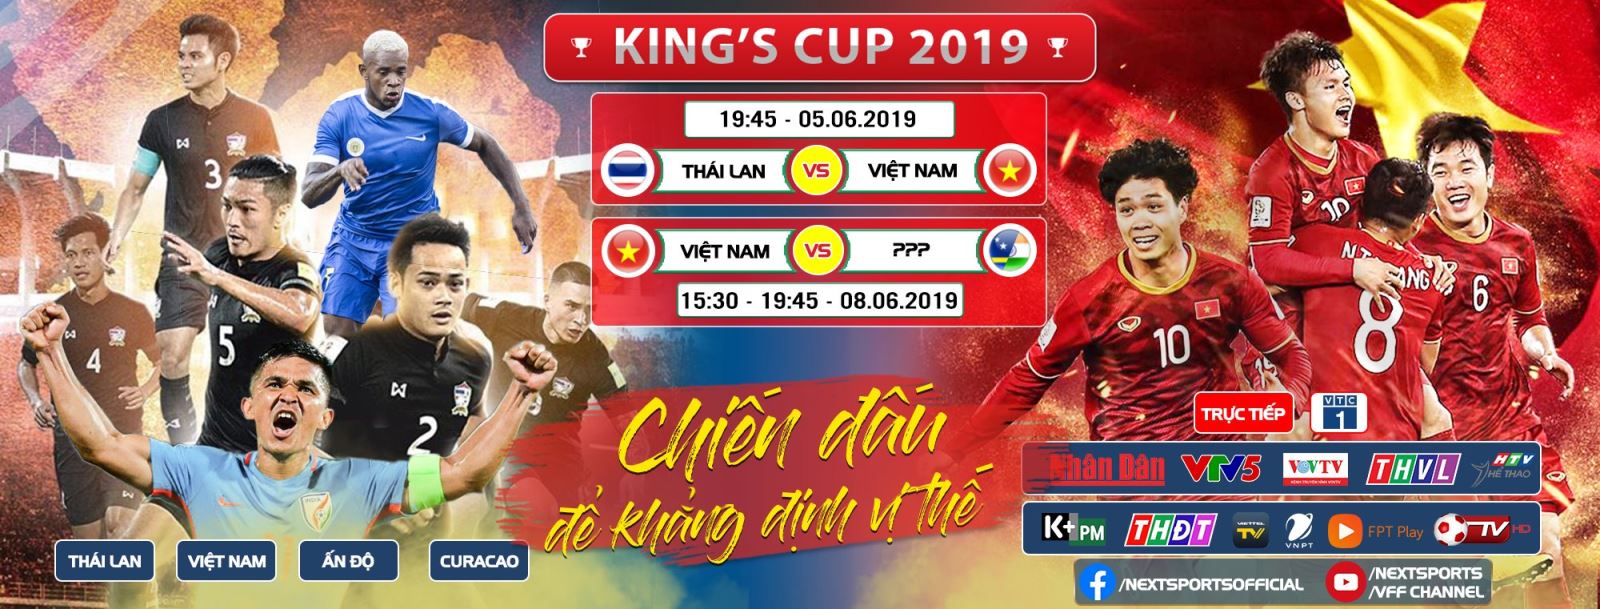 lịch thi đấu King Cup 2019, lich thi dau King's Cup, truc tiep bong da, trực tiếp bóng đá, Việt Nam vs Thái Lan, Việt Nam đấu với Thái Lan, VTC1, VTV5, VTV6, VTC3